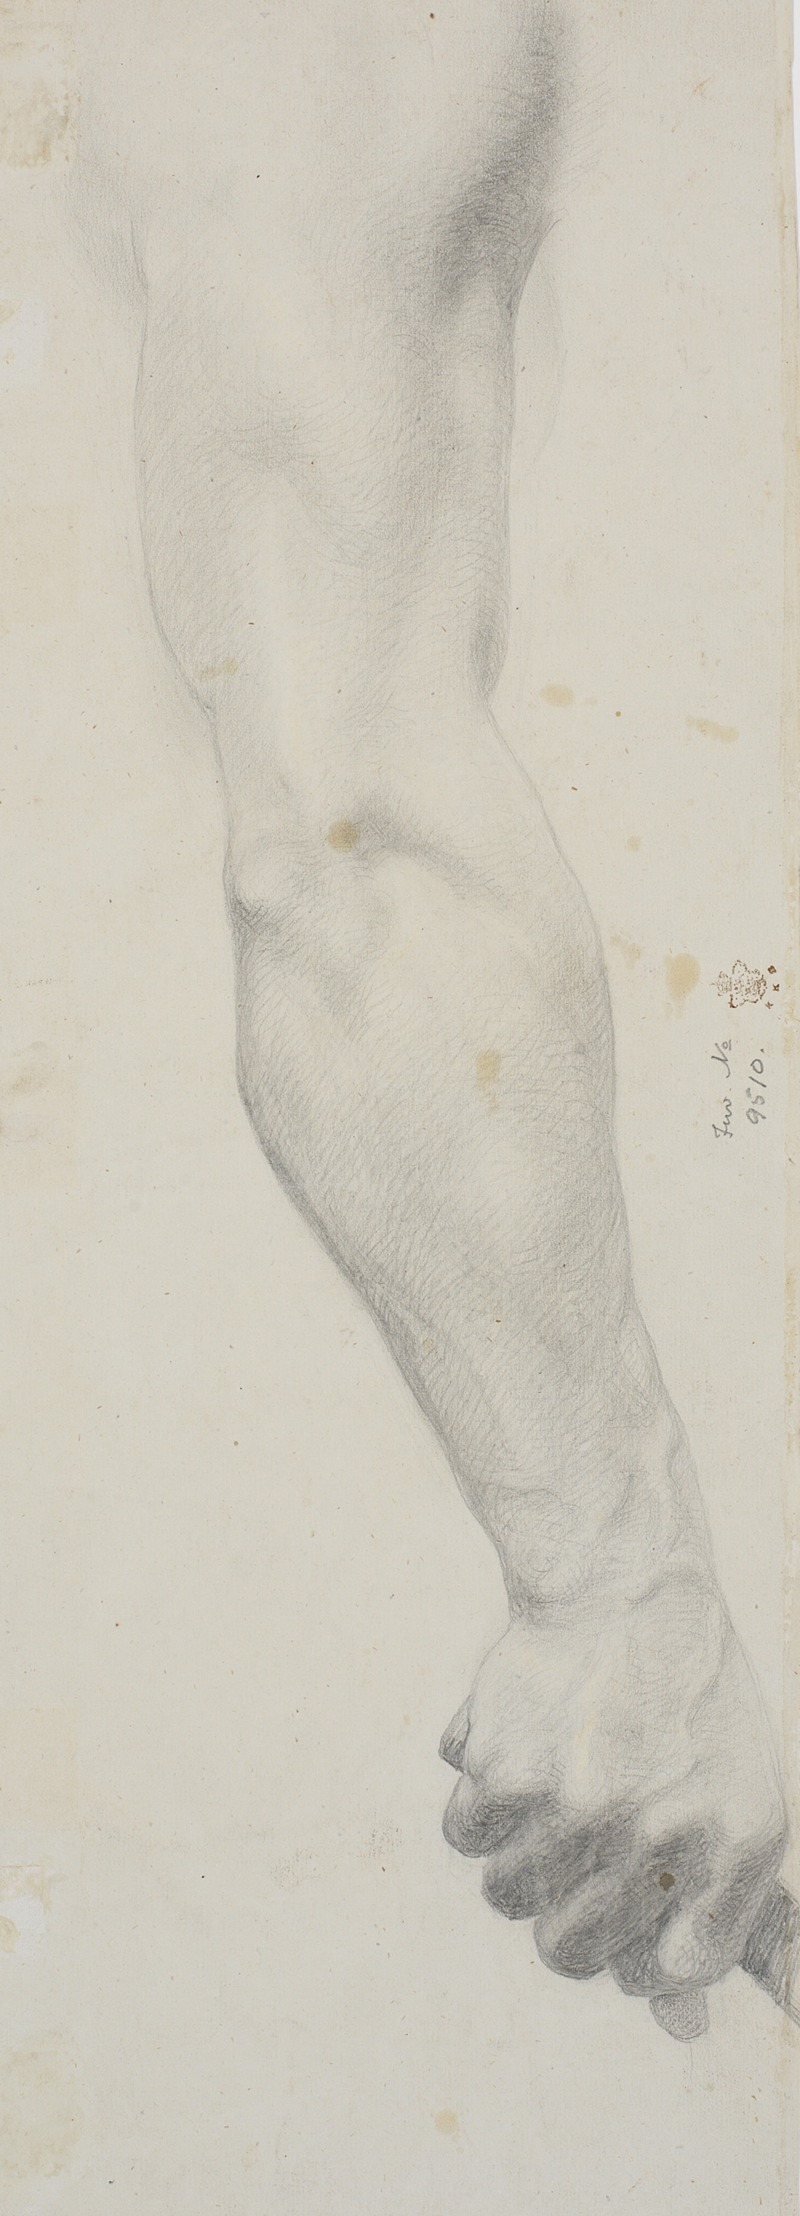 Theodor Philipsen - Studie af mandlig højre arm